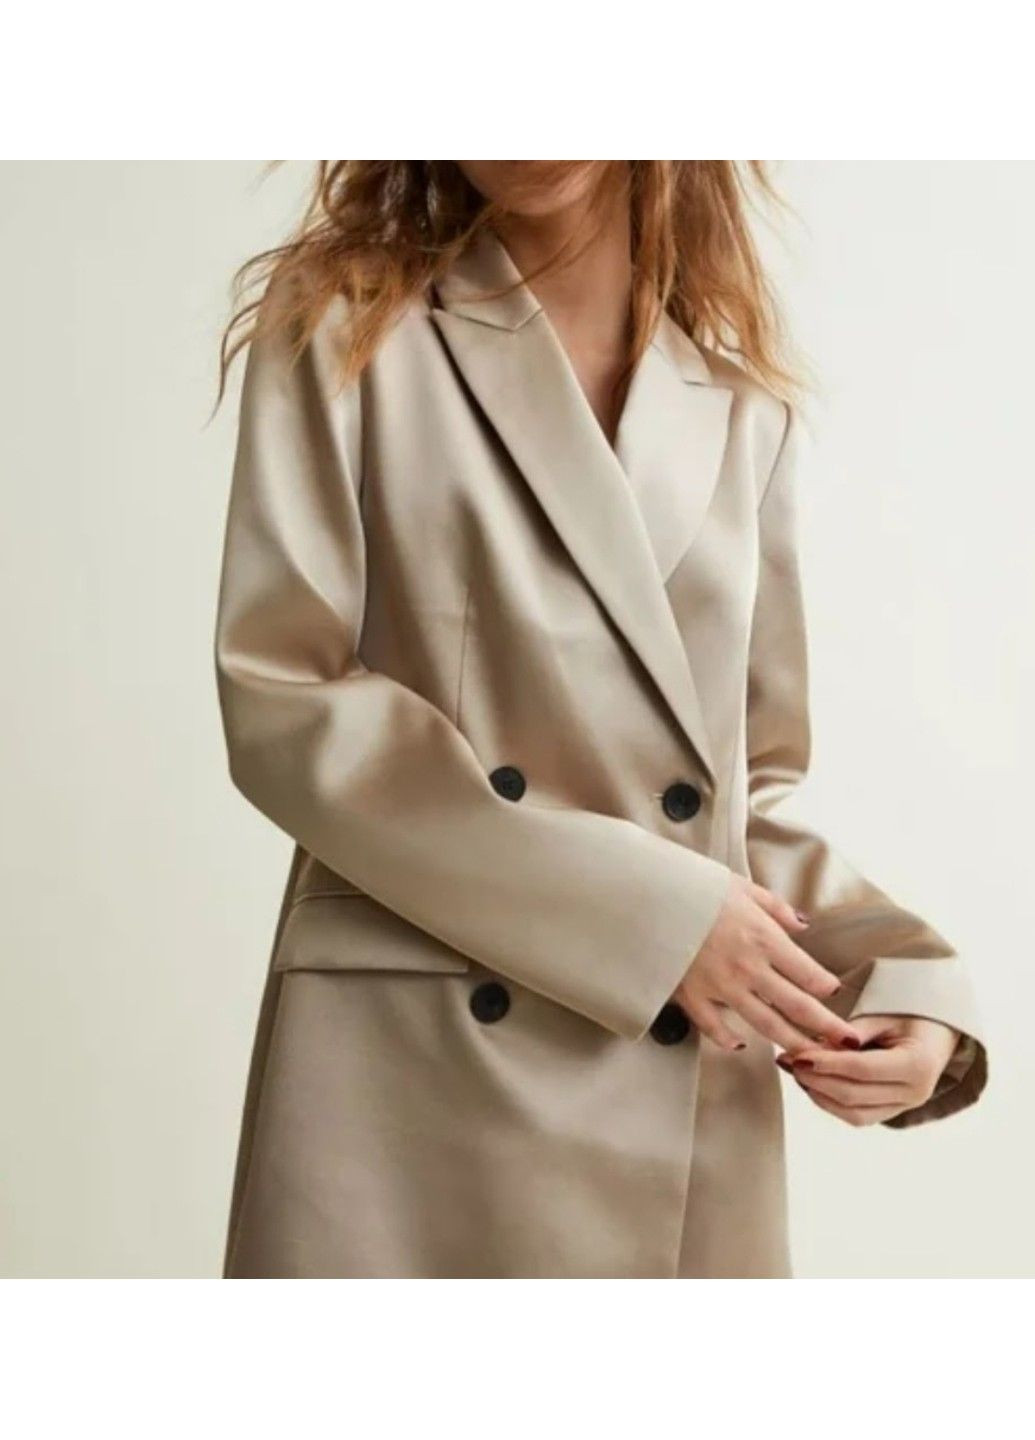 Світло-бежева ділова жіноча атласна сукня-піджак н&м (56662) м світло-бежева H&M